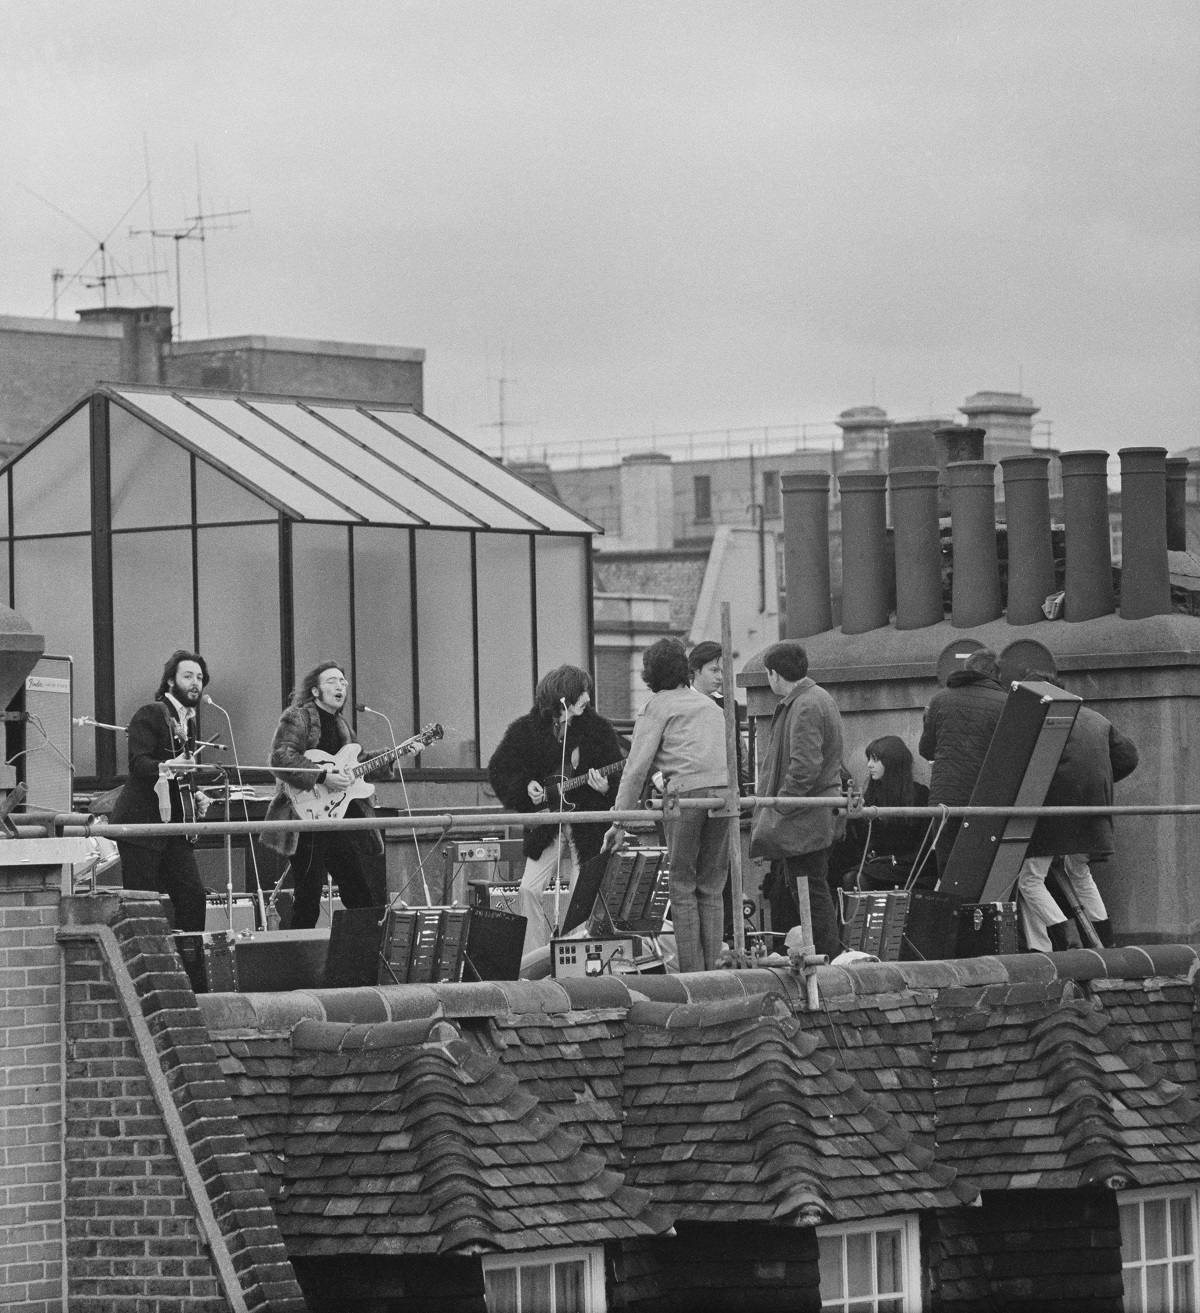 The Beatles rooftop concert